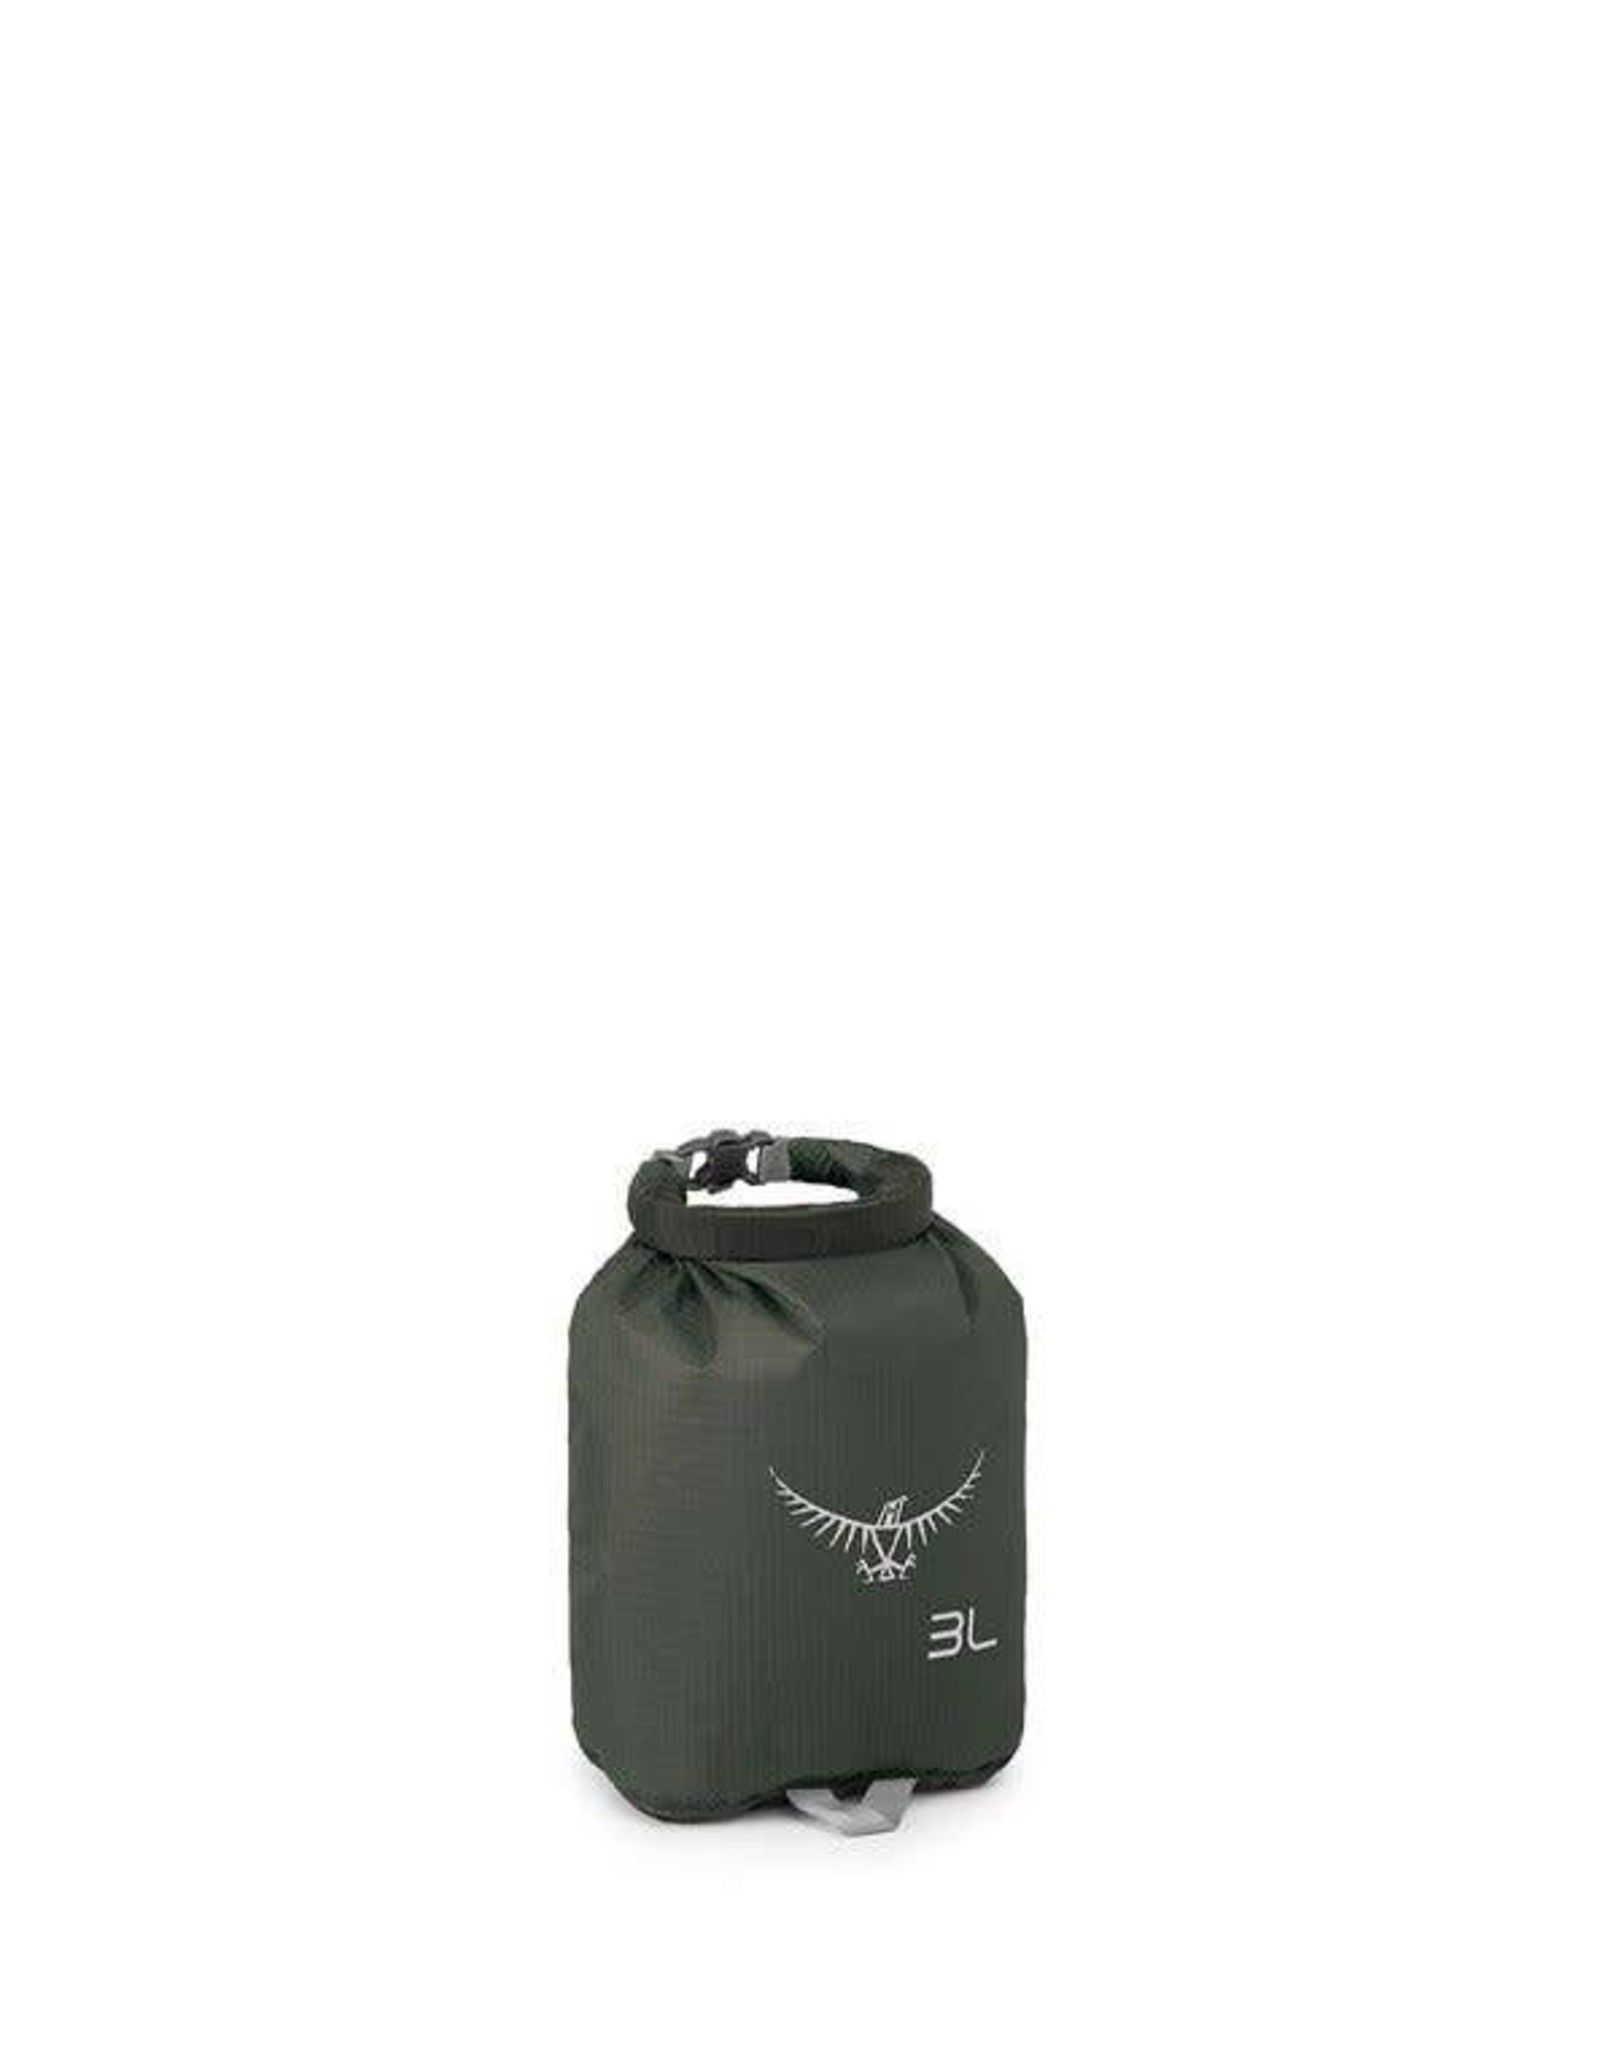 Osprey Osprey Ultralight Dry Sack 3L